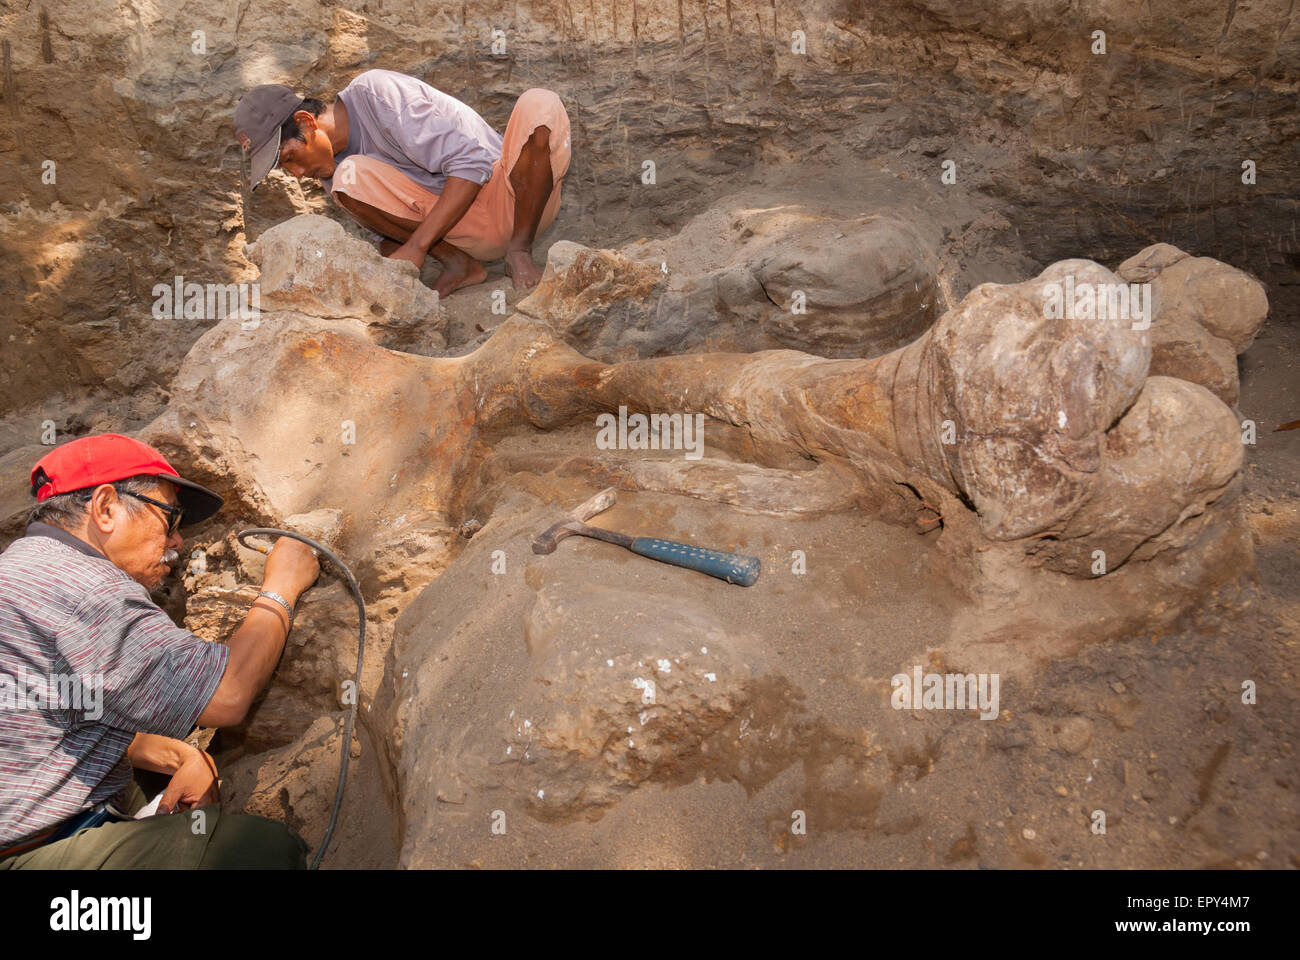 Fachroel Aziz, profesor de investigación de paleontología de vertebrados (con gorra de béisbol roja), está trabajando durante una excavación en Blora, Indonesia. Foto de stock